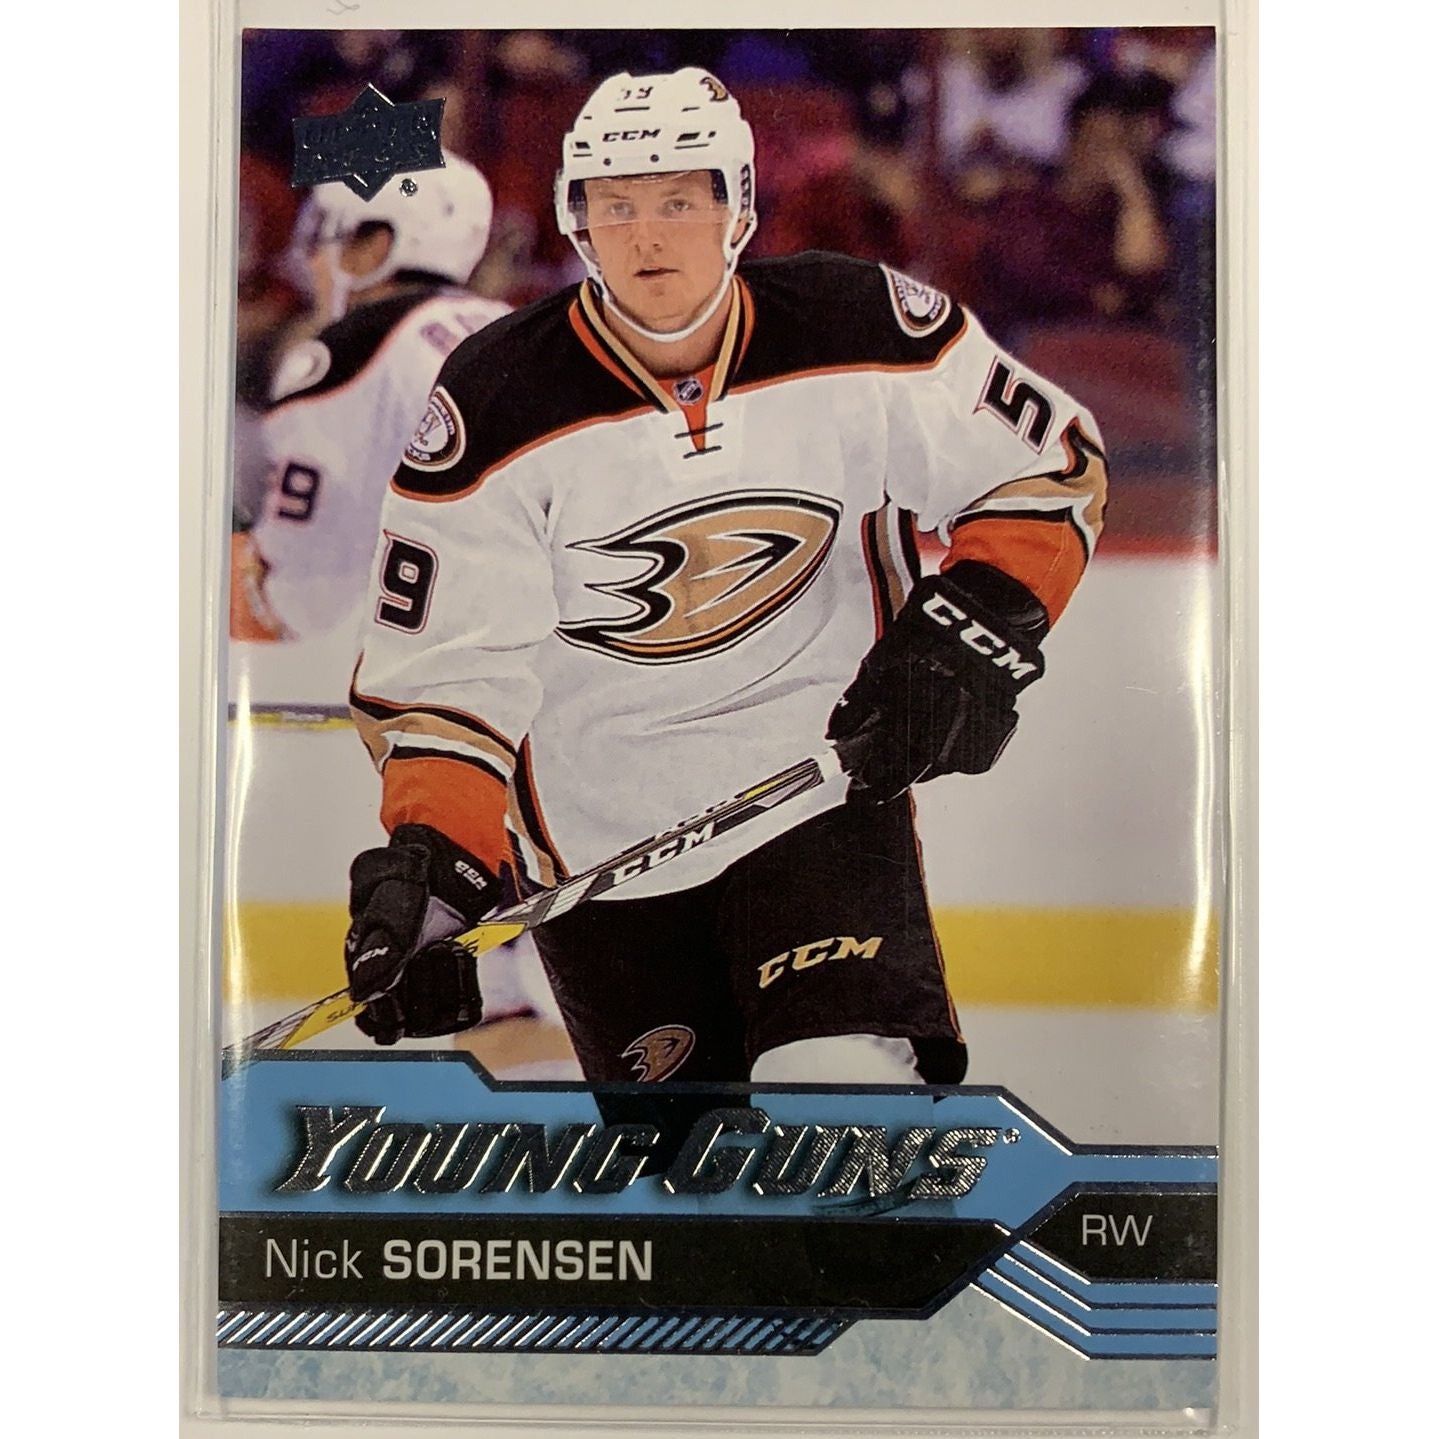  2016-17 Upper Deck Series 1 Nick Sorensen Young Guns  Local Legends Cards & Collectibles